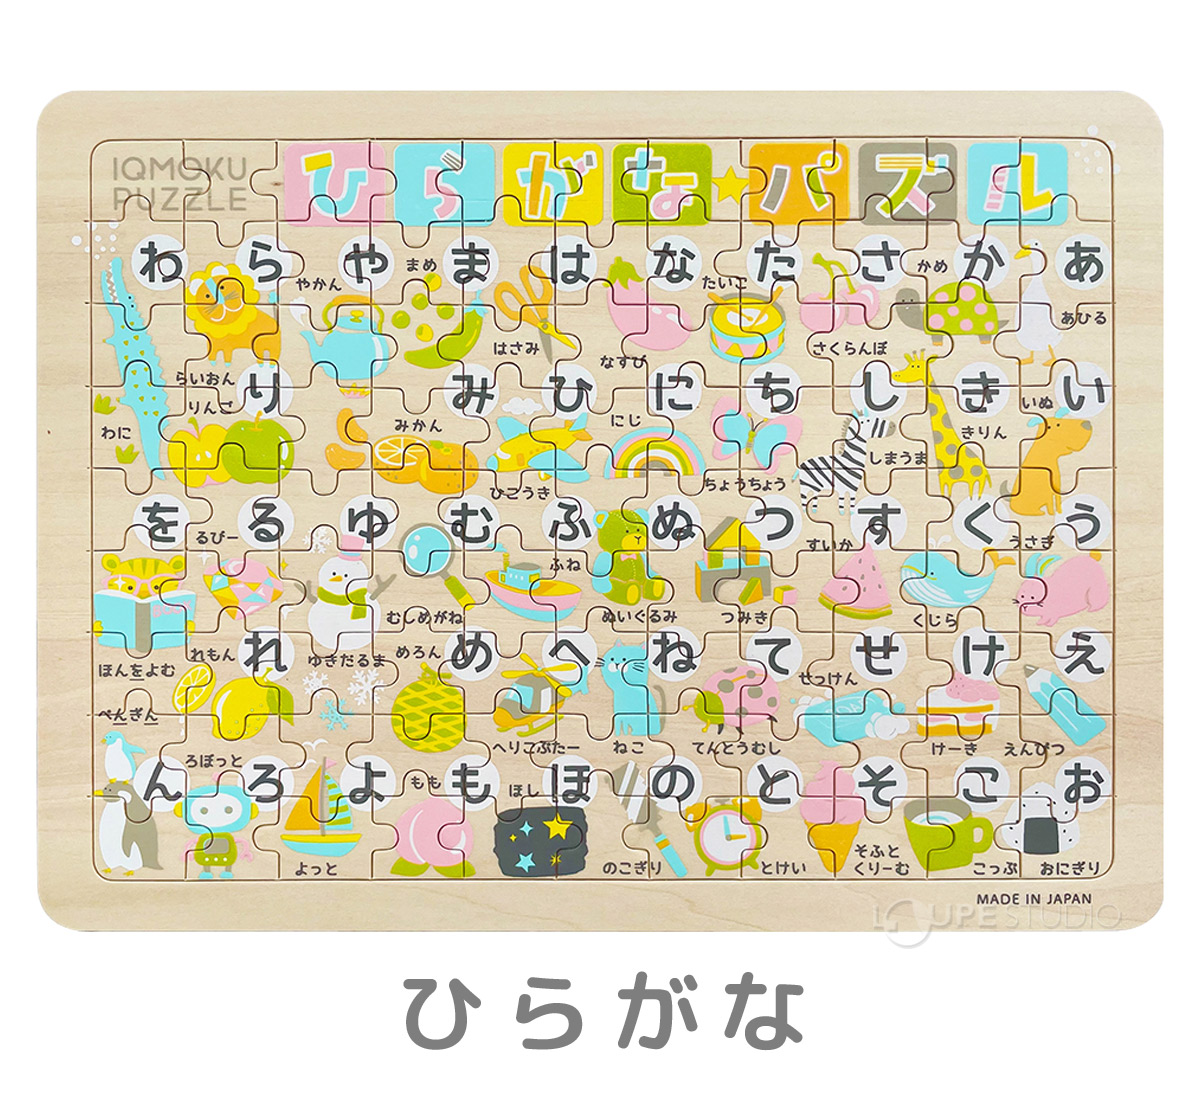 パズル 子供 フレームあり 日本製 6歳 7歳 日本地図 どうぶつ ひらがな アルファベット 低学年 保育園 年長 小学生 社会?知育玩具 木製 ボケ